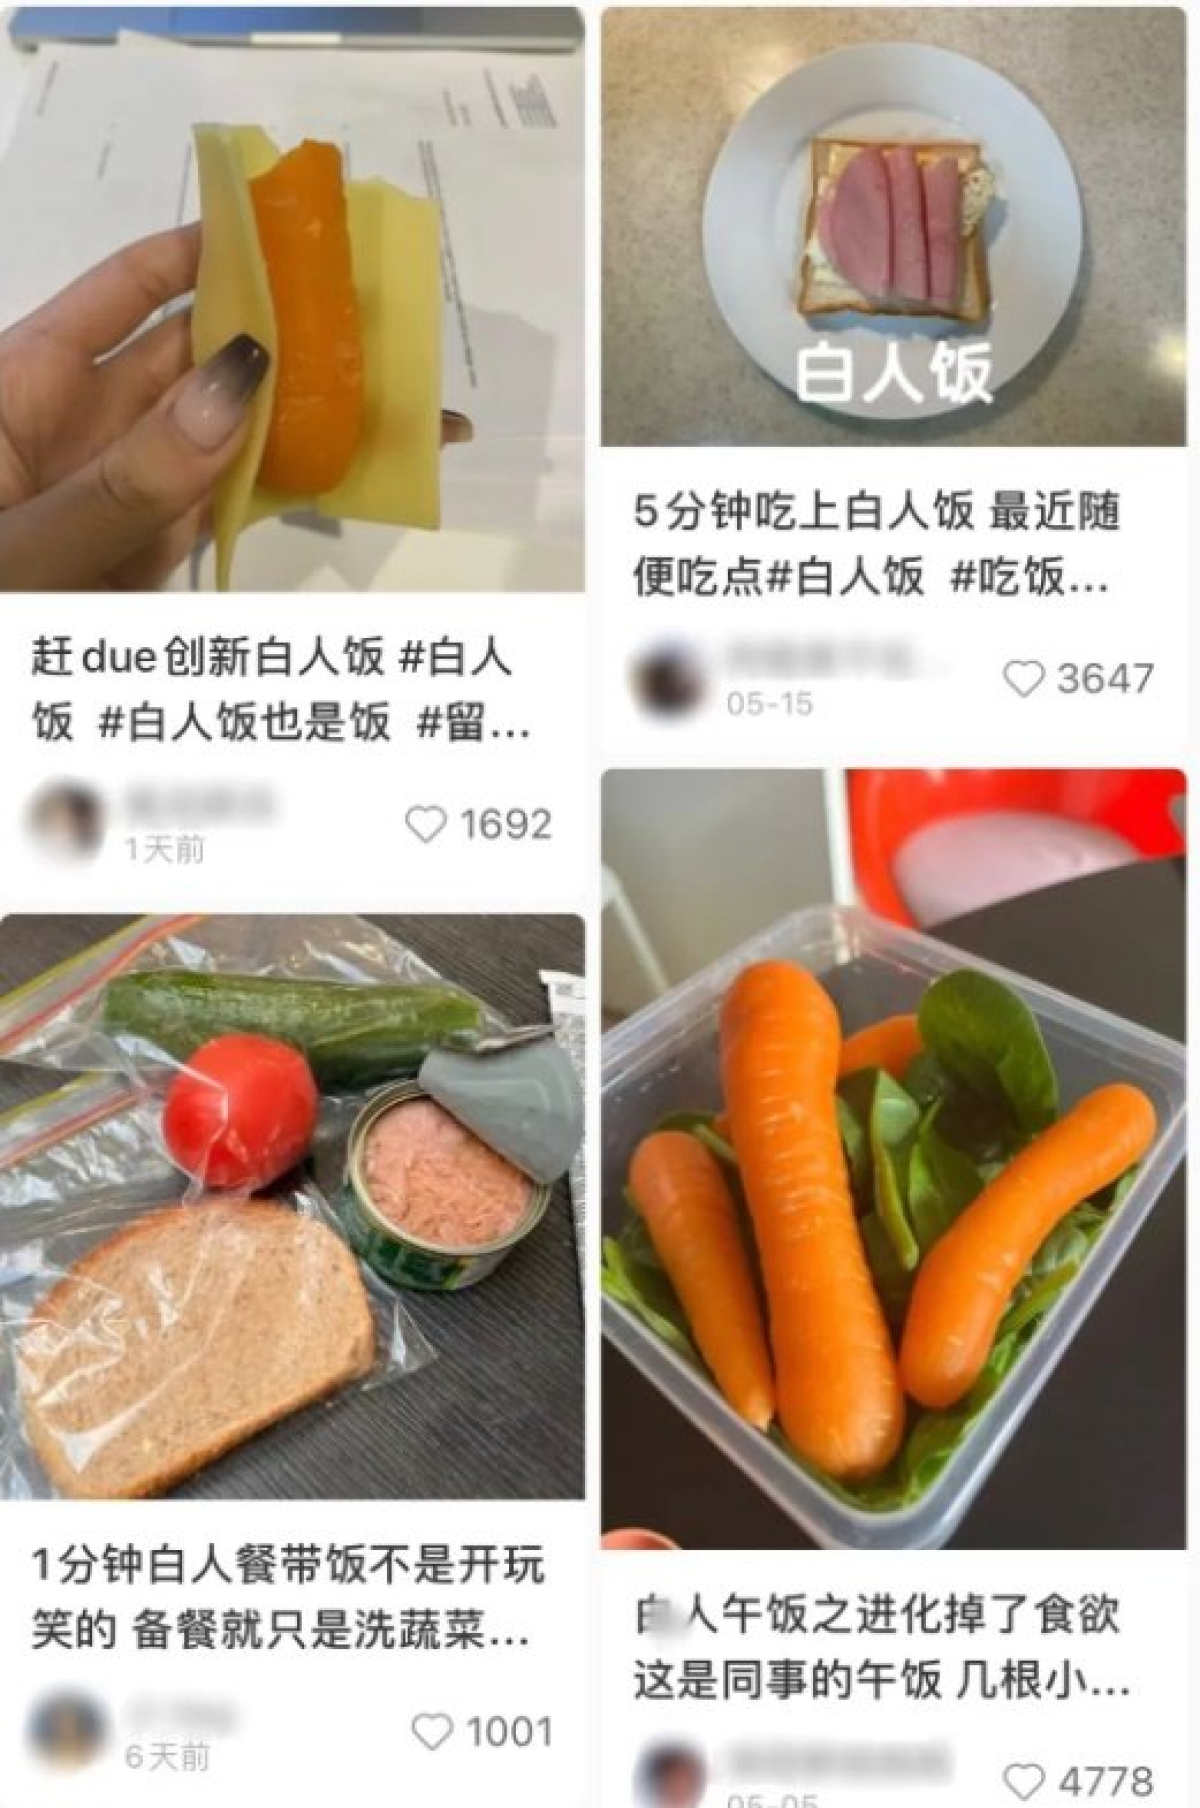 최근 중국 청년들 사이에서 열풍인 바이런판(백인의 식사). 한 두 개 재료로 만든 샌드위치 등 간편한 음식을 먹는 것으로 최악의 취업난을 겪는 중국 청년들 사이에서 인기다. 트위터 캡처